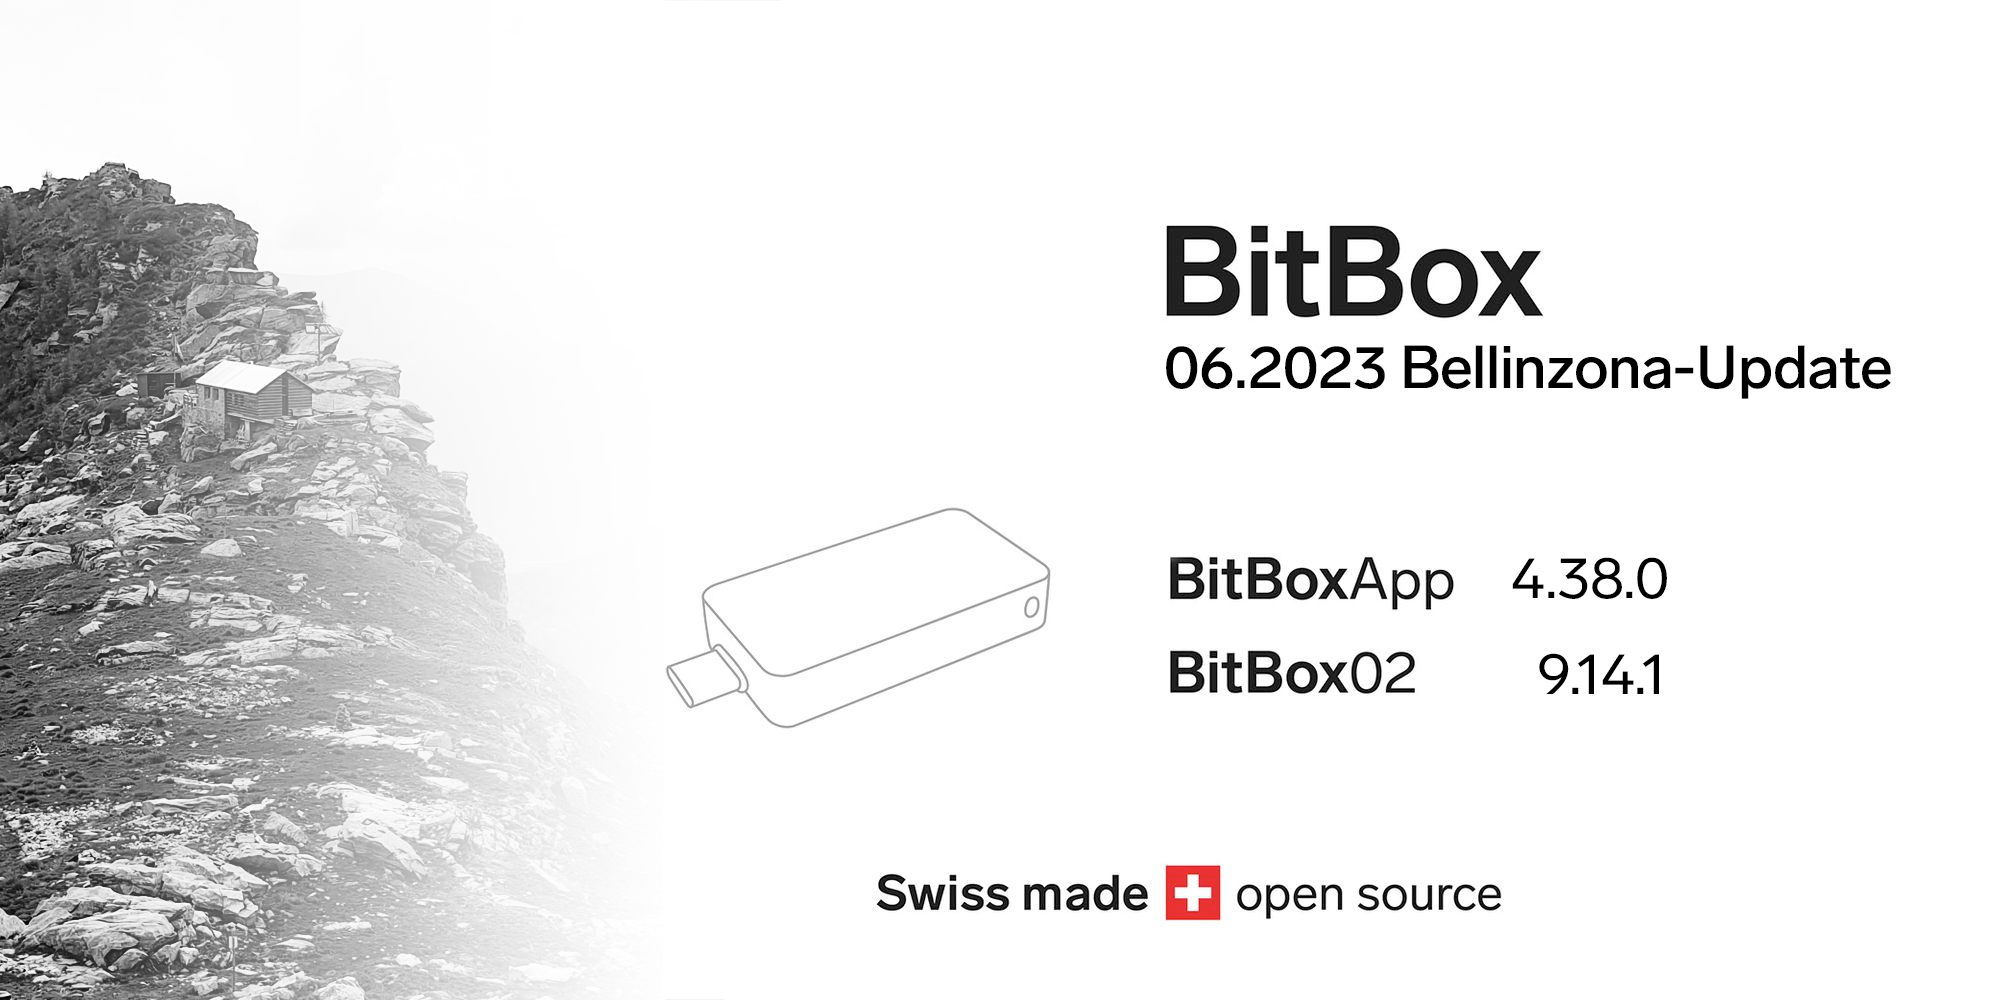 BitBox 06.2023 Bellinzona-Update